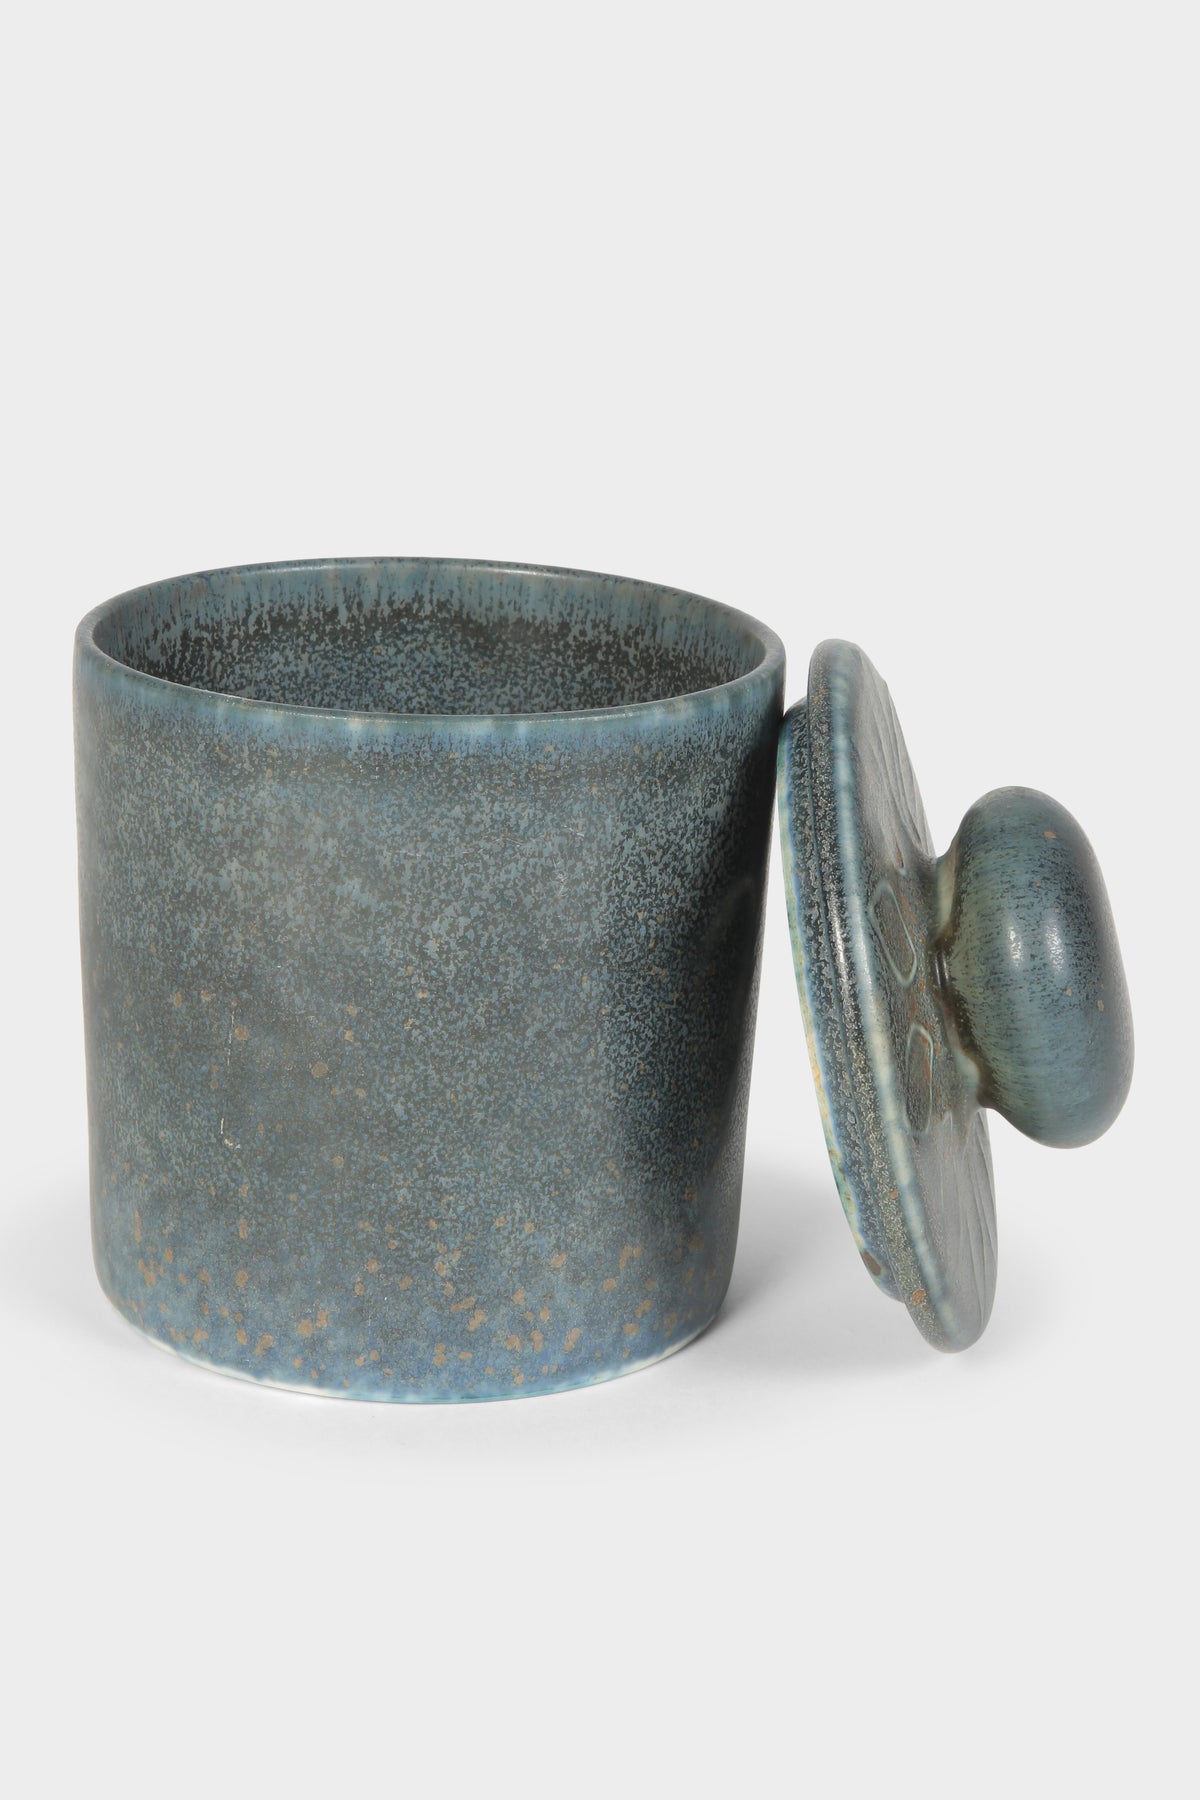 Hertha Bengtson Ceramic, Rörstrand, 60s